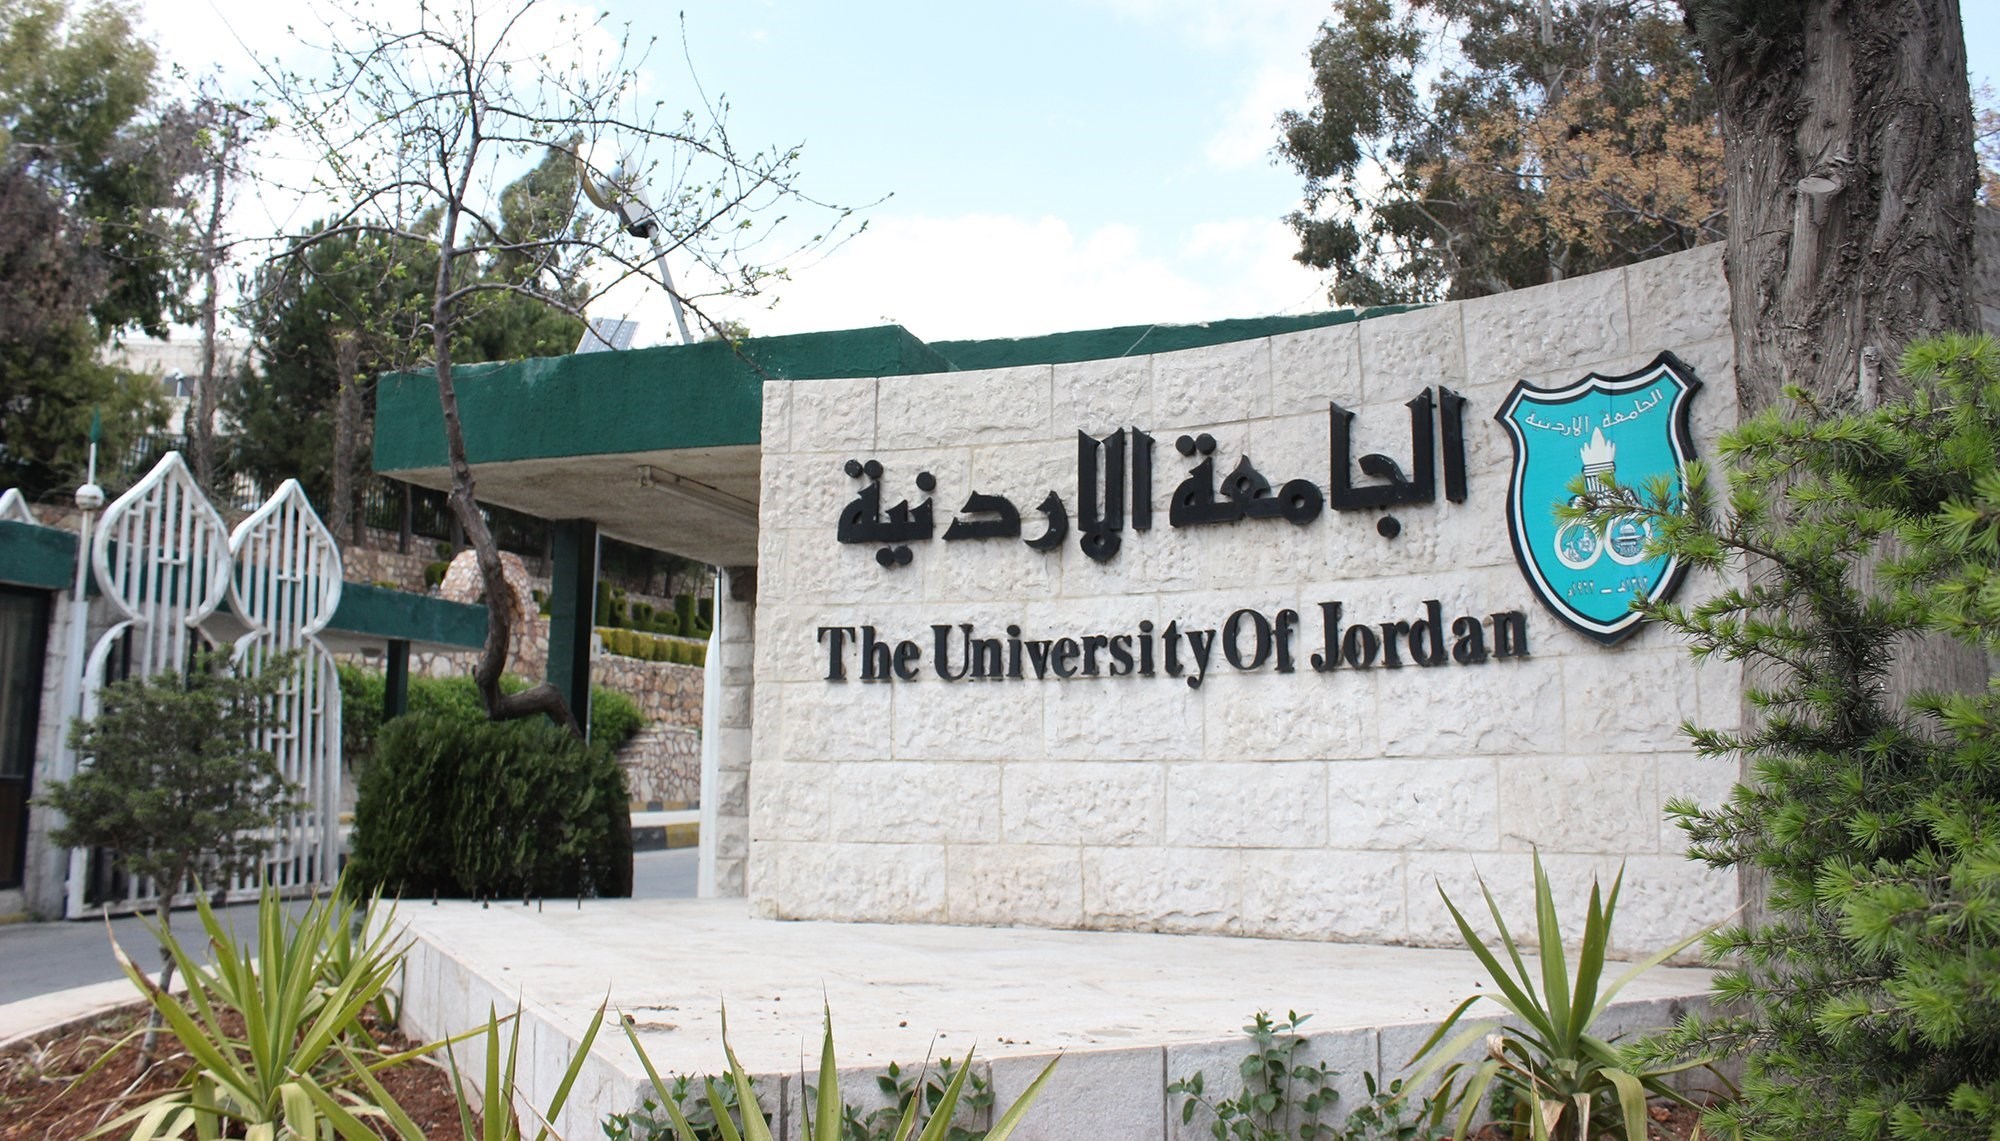 إنجاز تاريخي ..  الأردنية تتقدم إلى المرتبة 368 على مستوى العالم